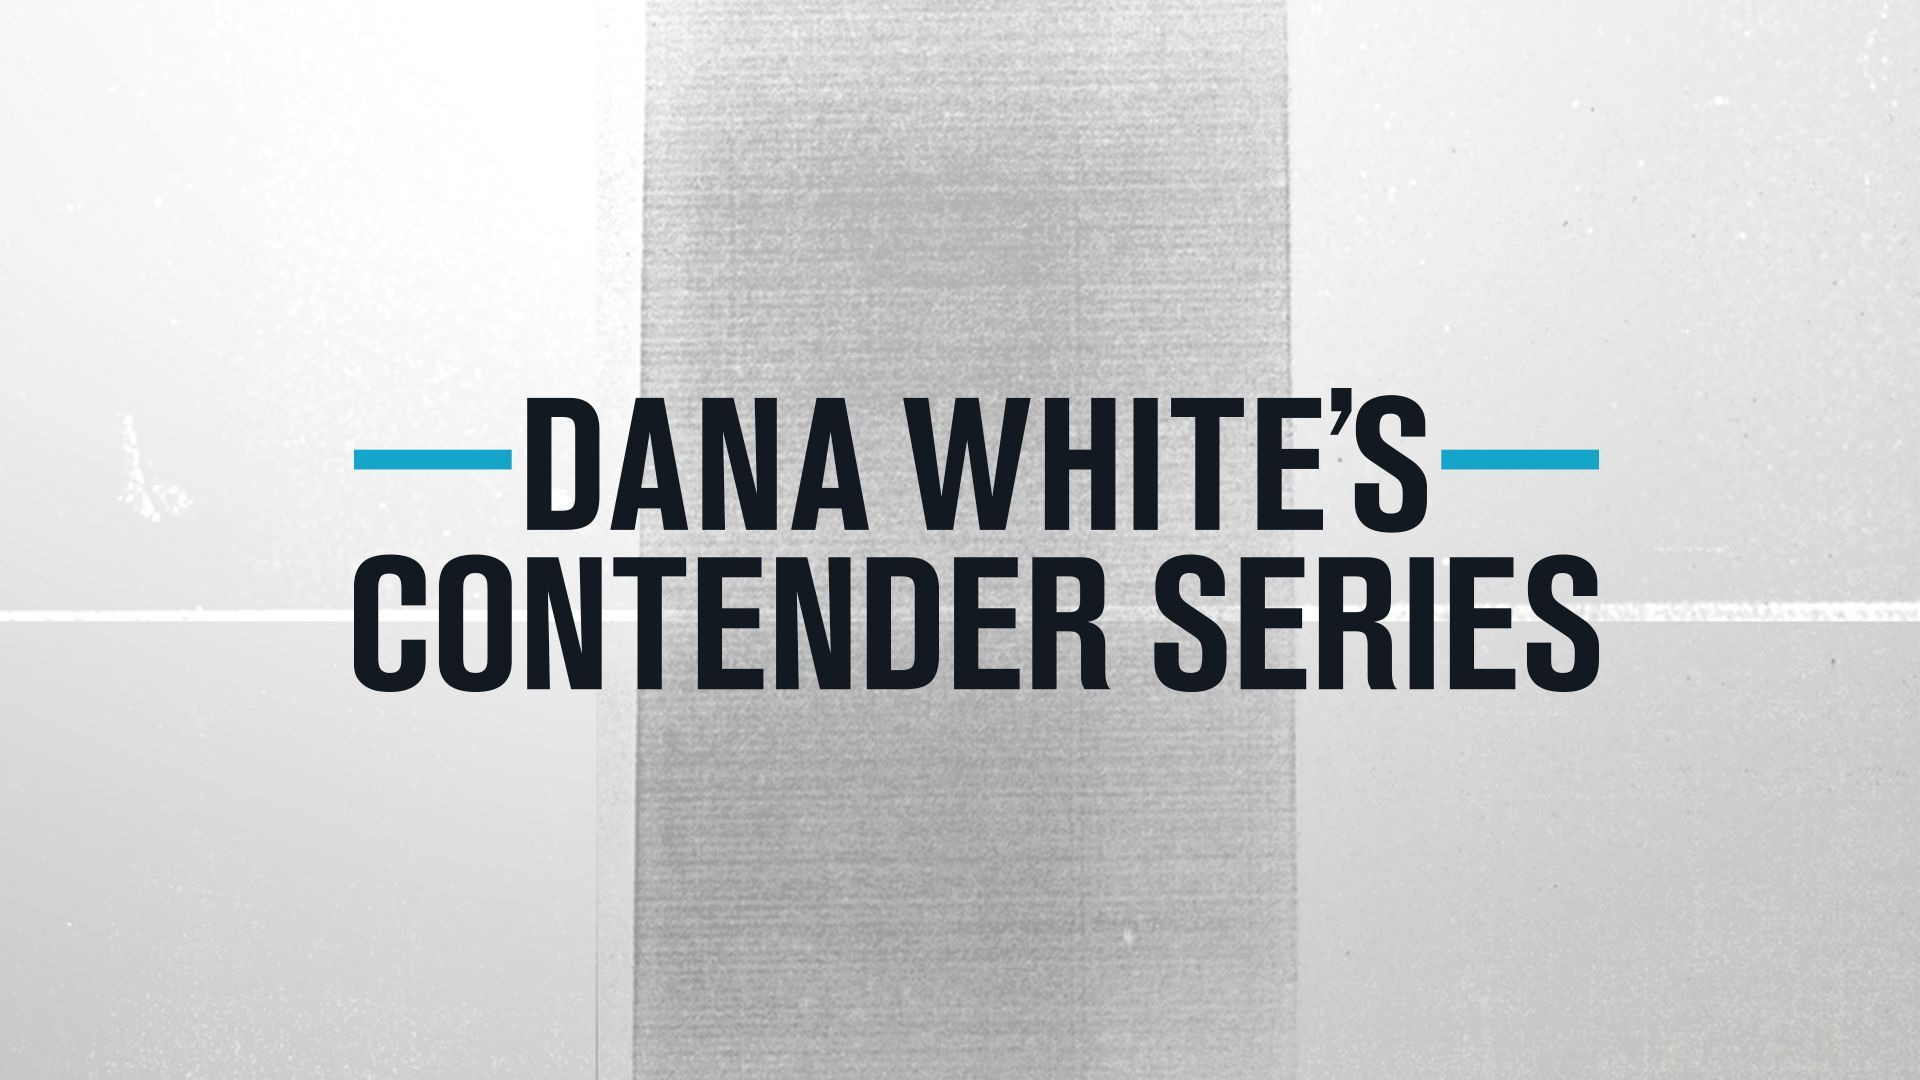 Show Dana White's Tuesday Night Contender Series